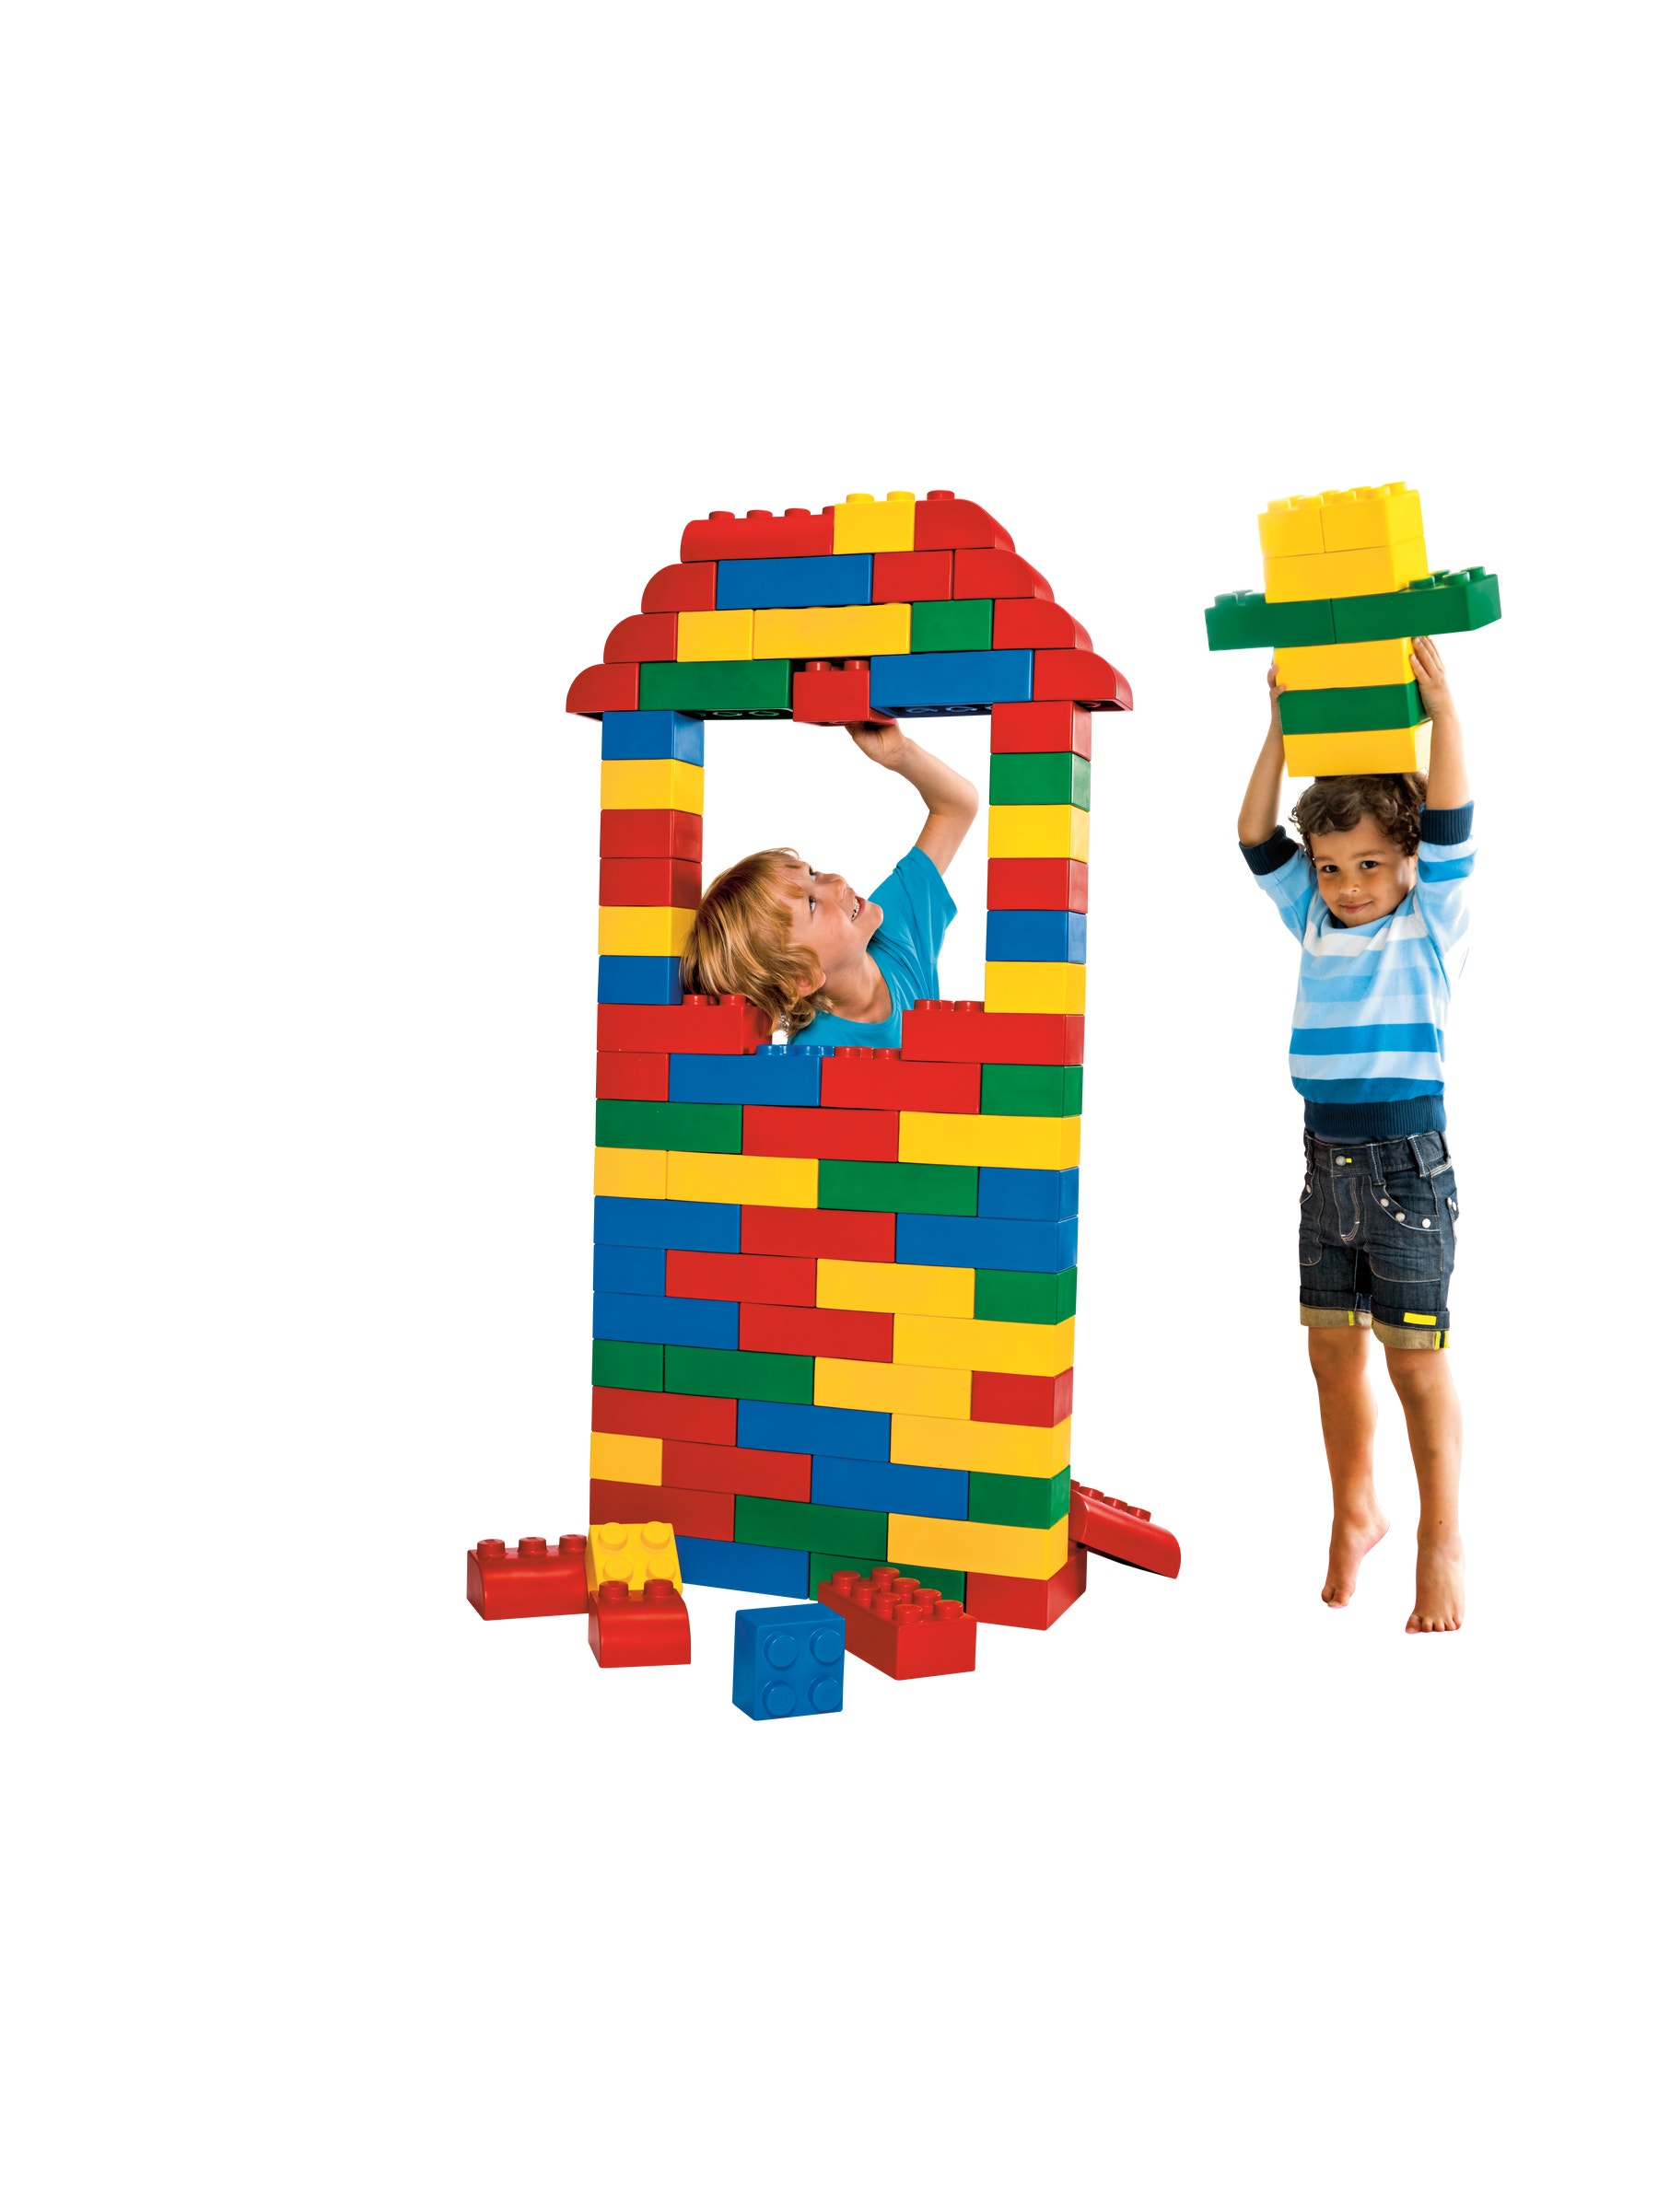 These giant LEGO foam bricks. : r/lego